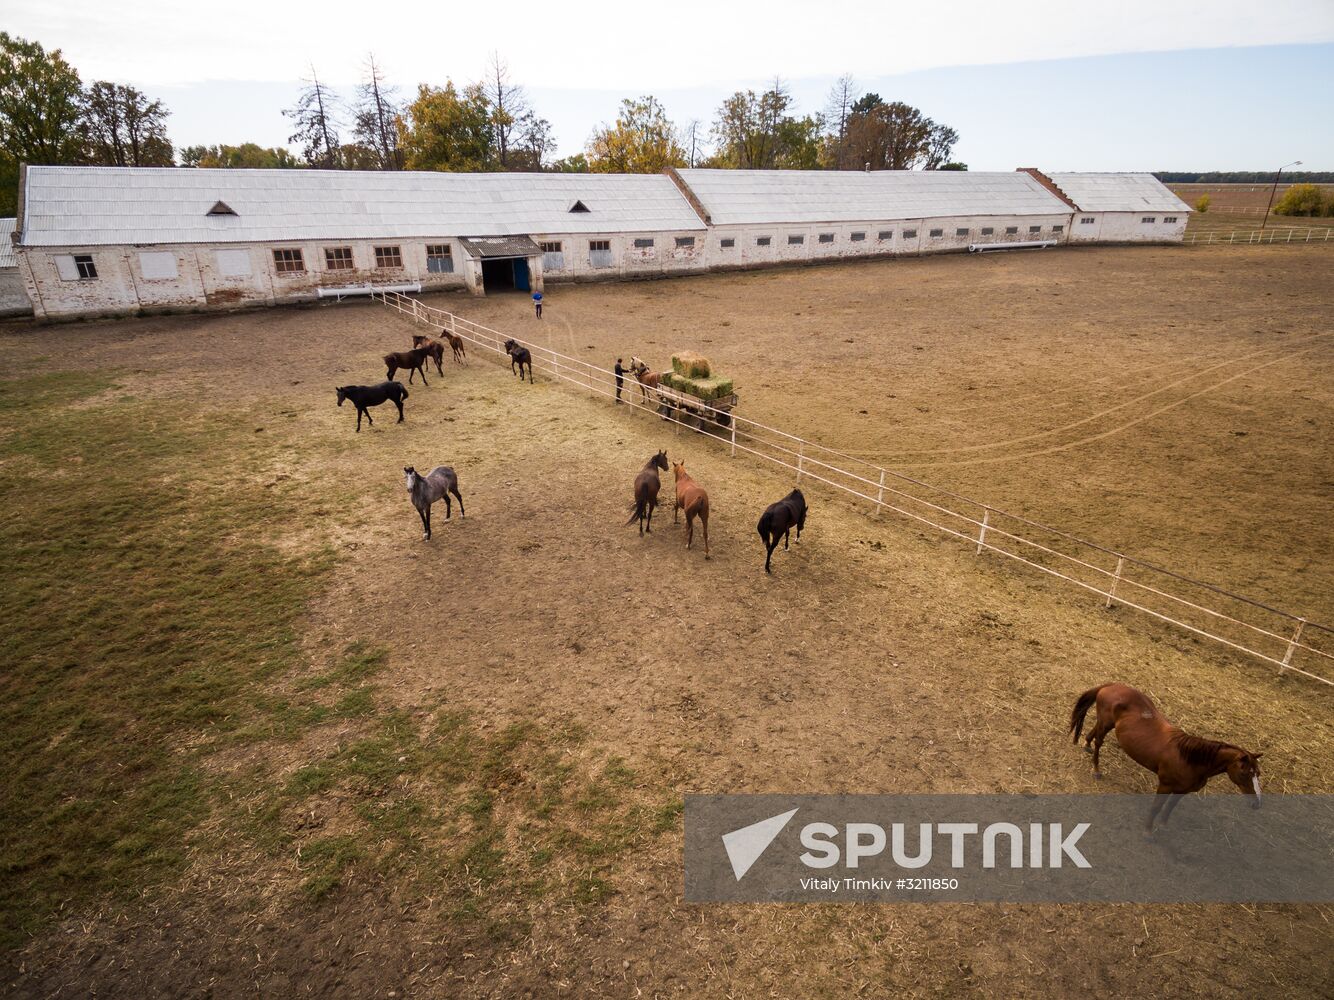 Voskhod Stud Farm in Krasnodar Region